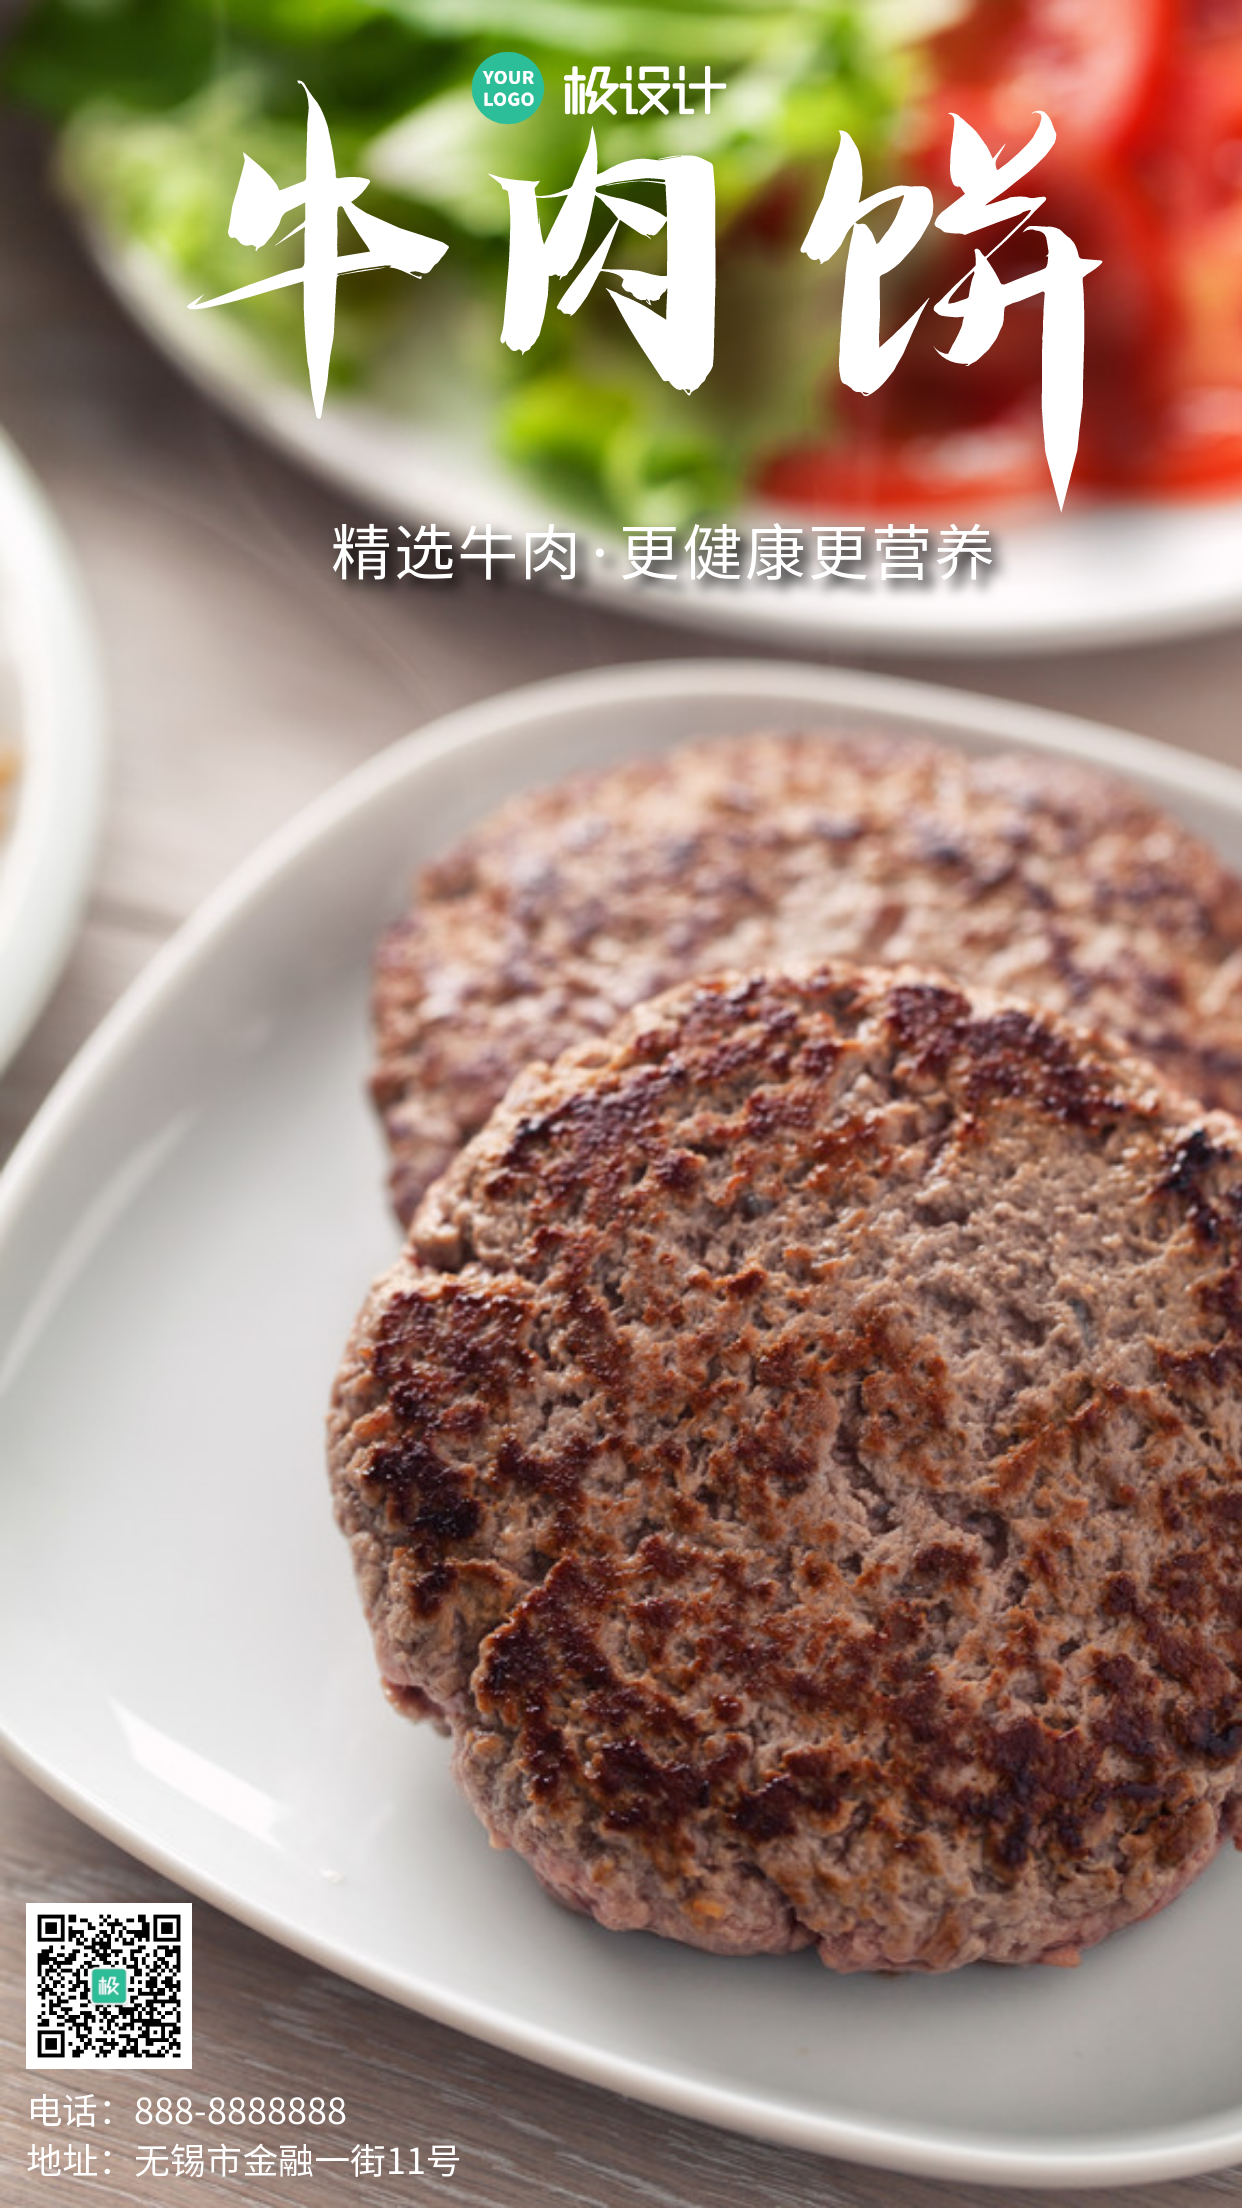 牛肉饼红褐色创意美食宣传摄影图手机海报